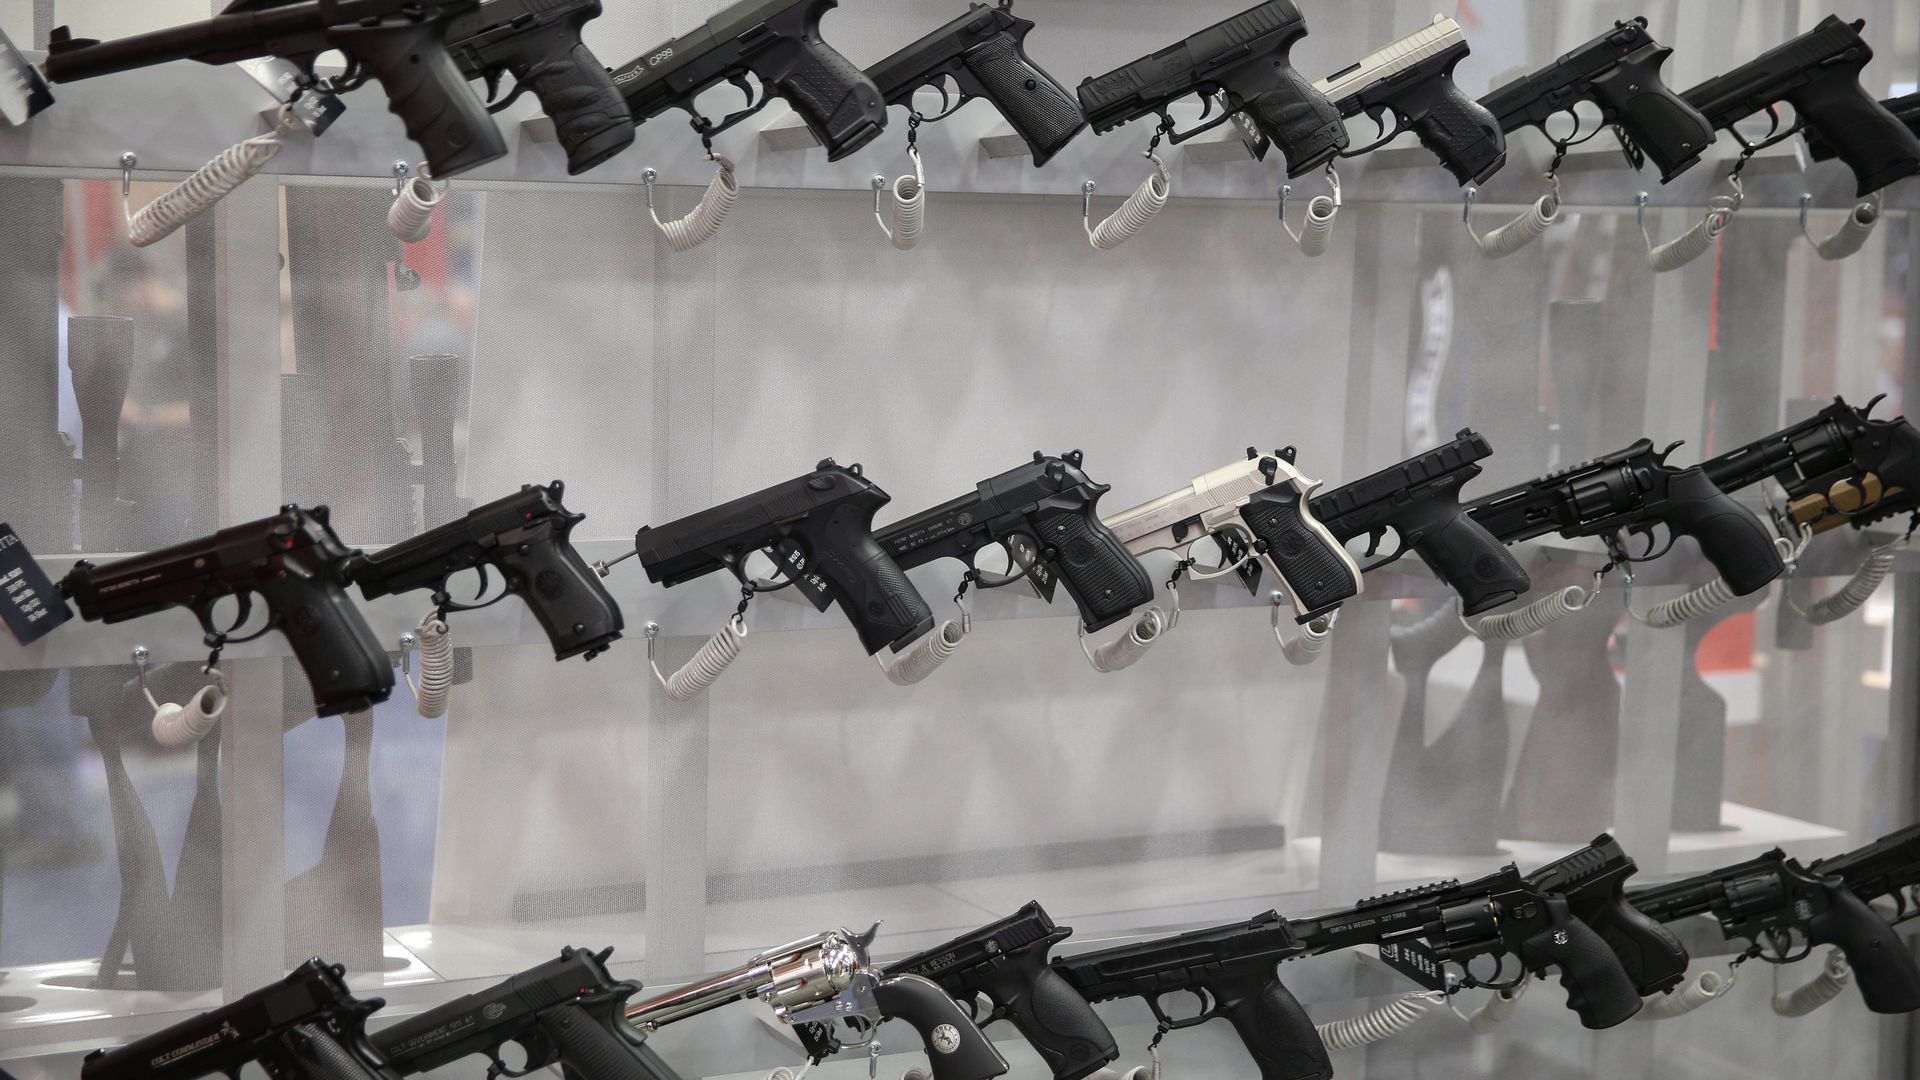 Rows of hand guns on shelves.